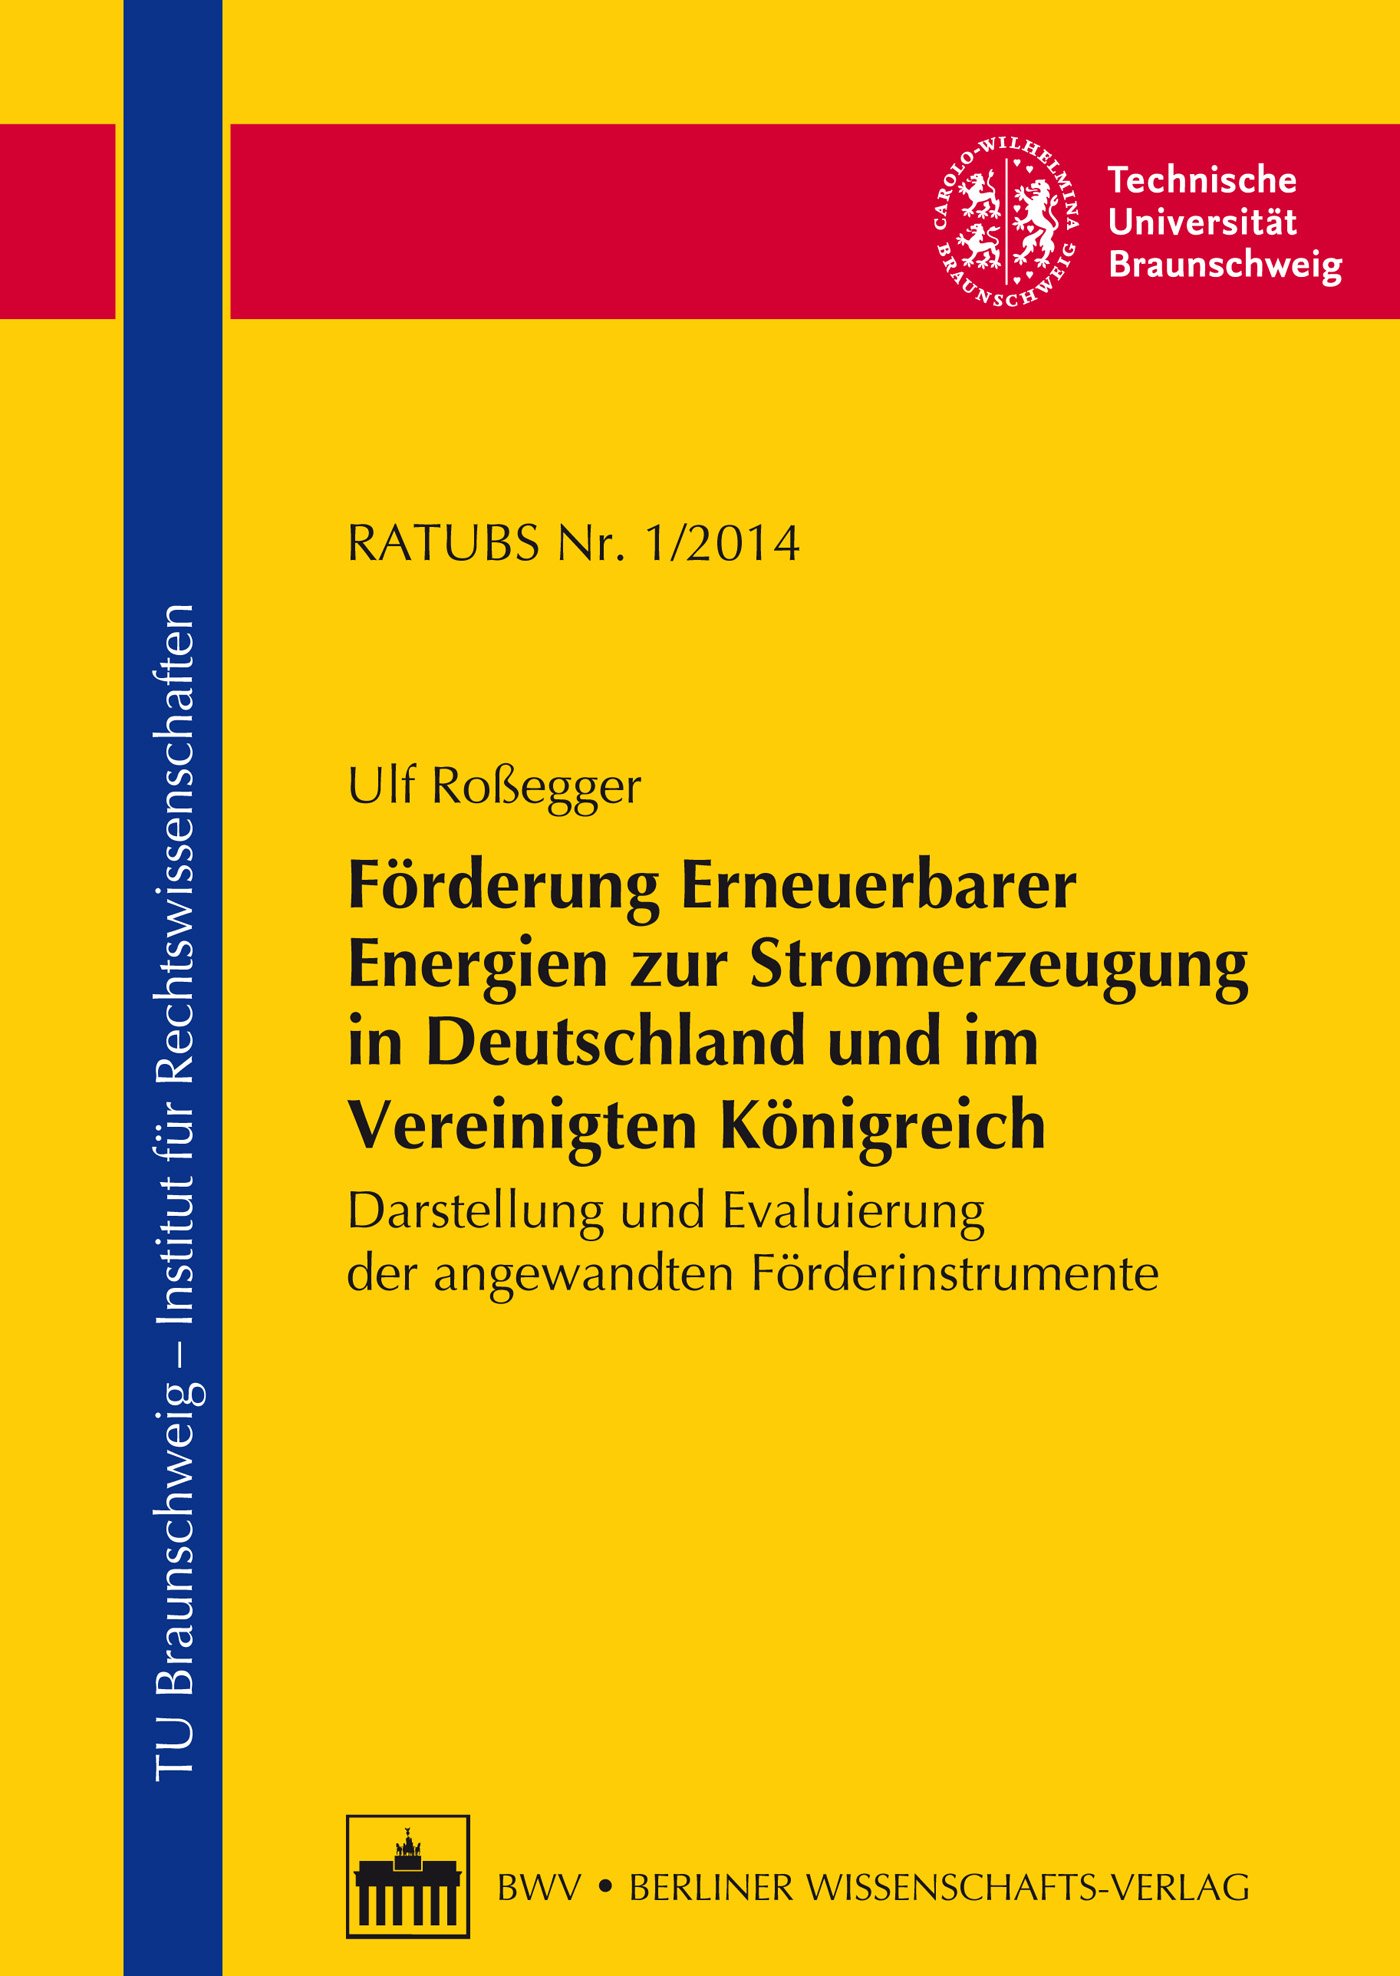 Förderung Erneuerbarer Energien zur Stromerzeugung in Deutschland und im Vereinigten Königreich